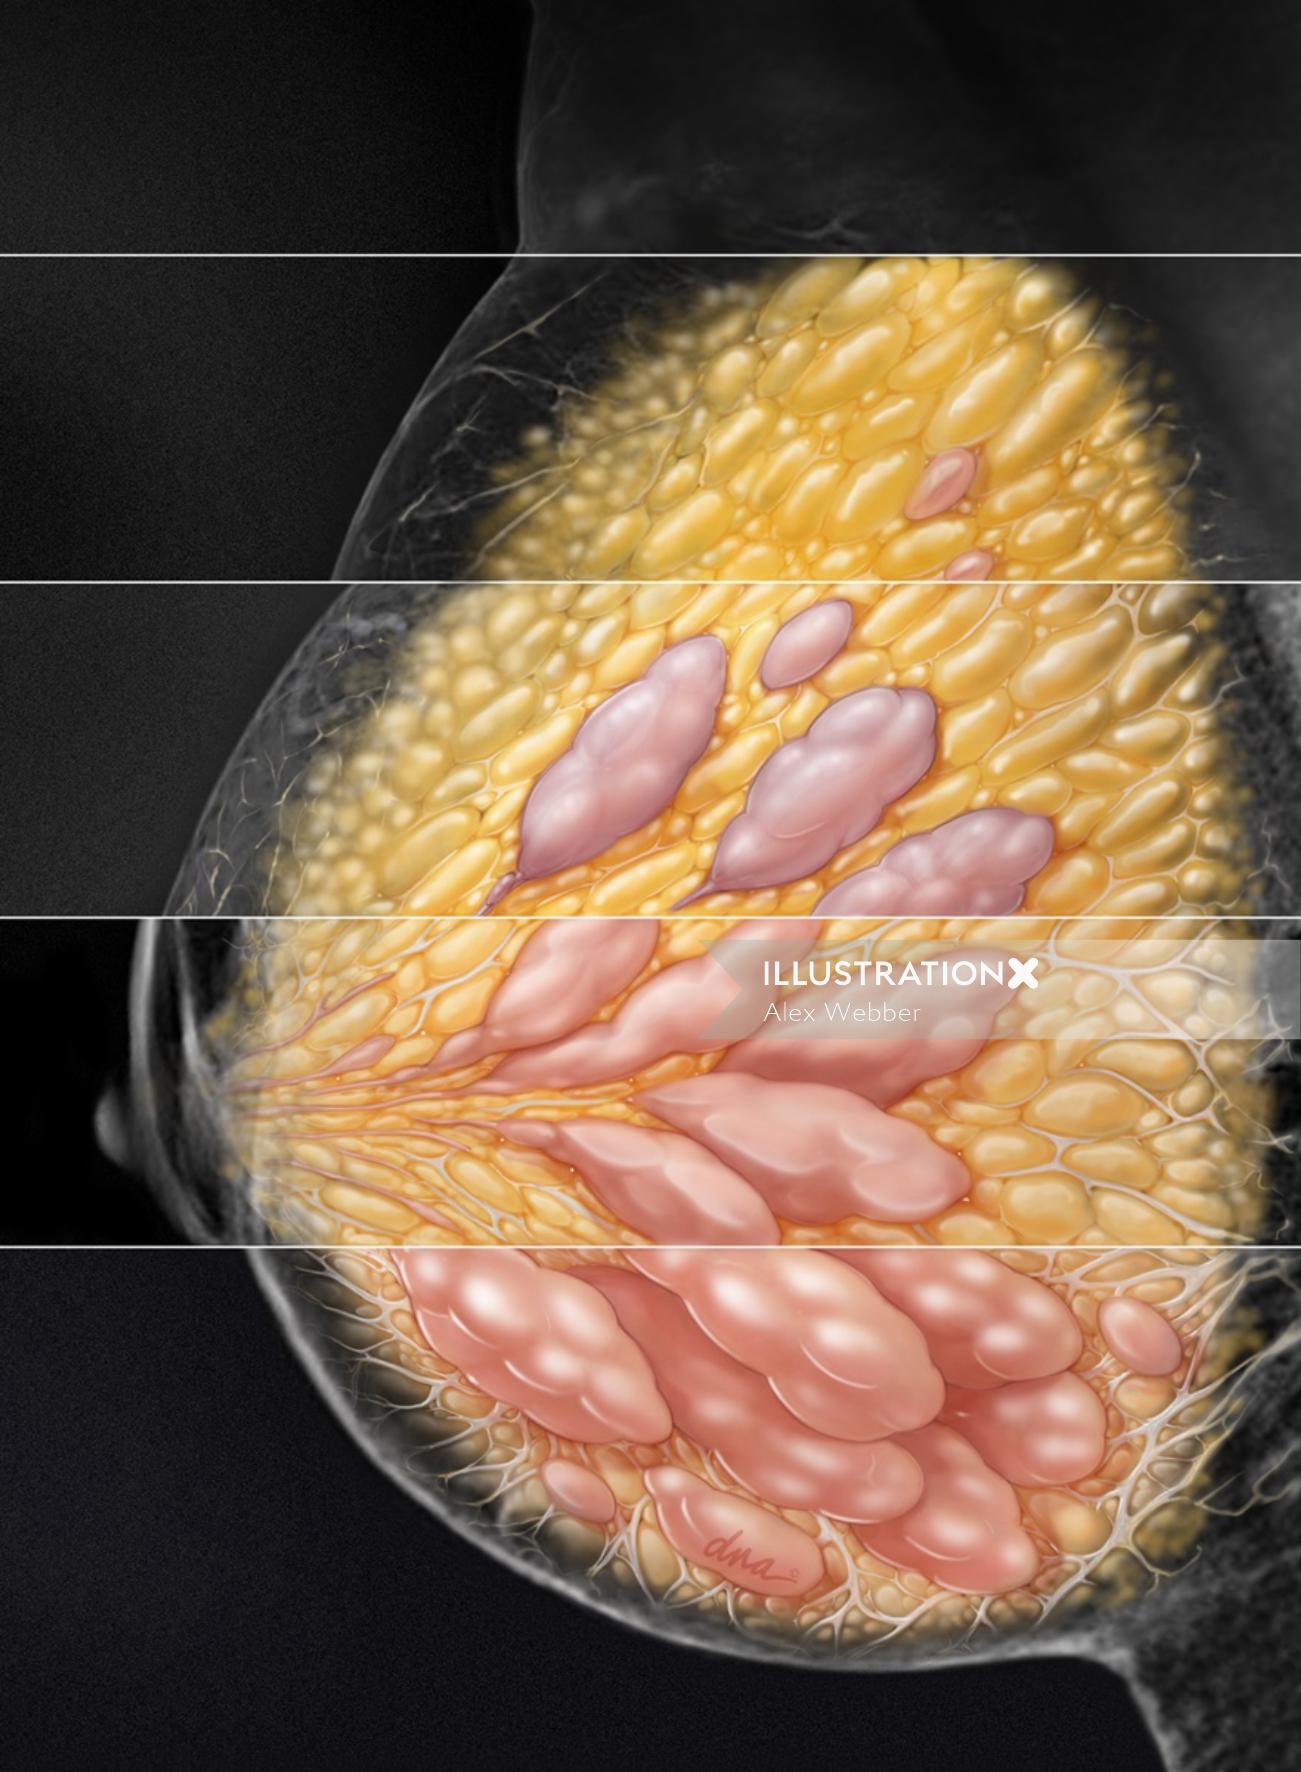 マンモグラフィーにおける乳房密度4段階の自然像